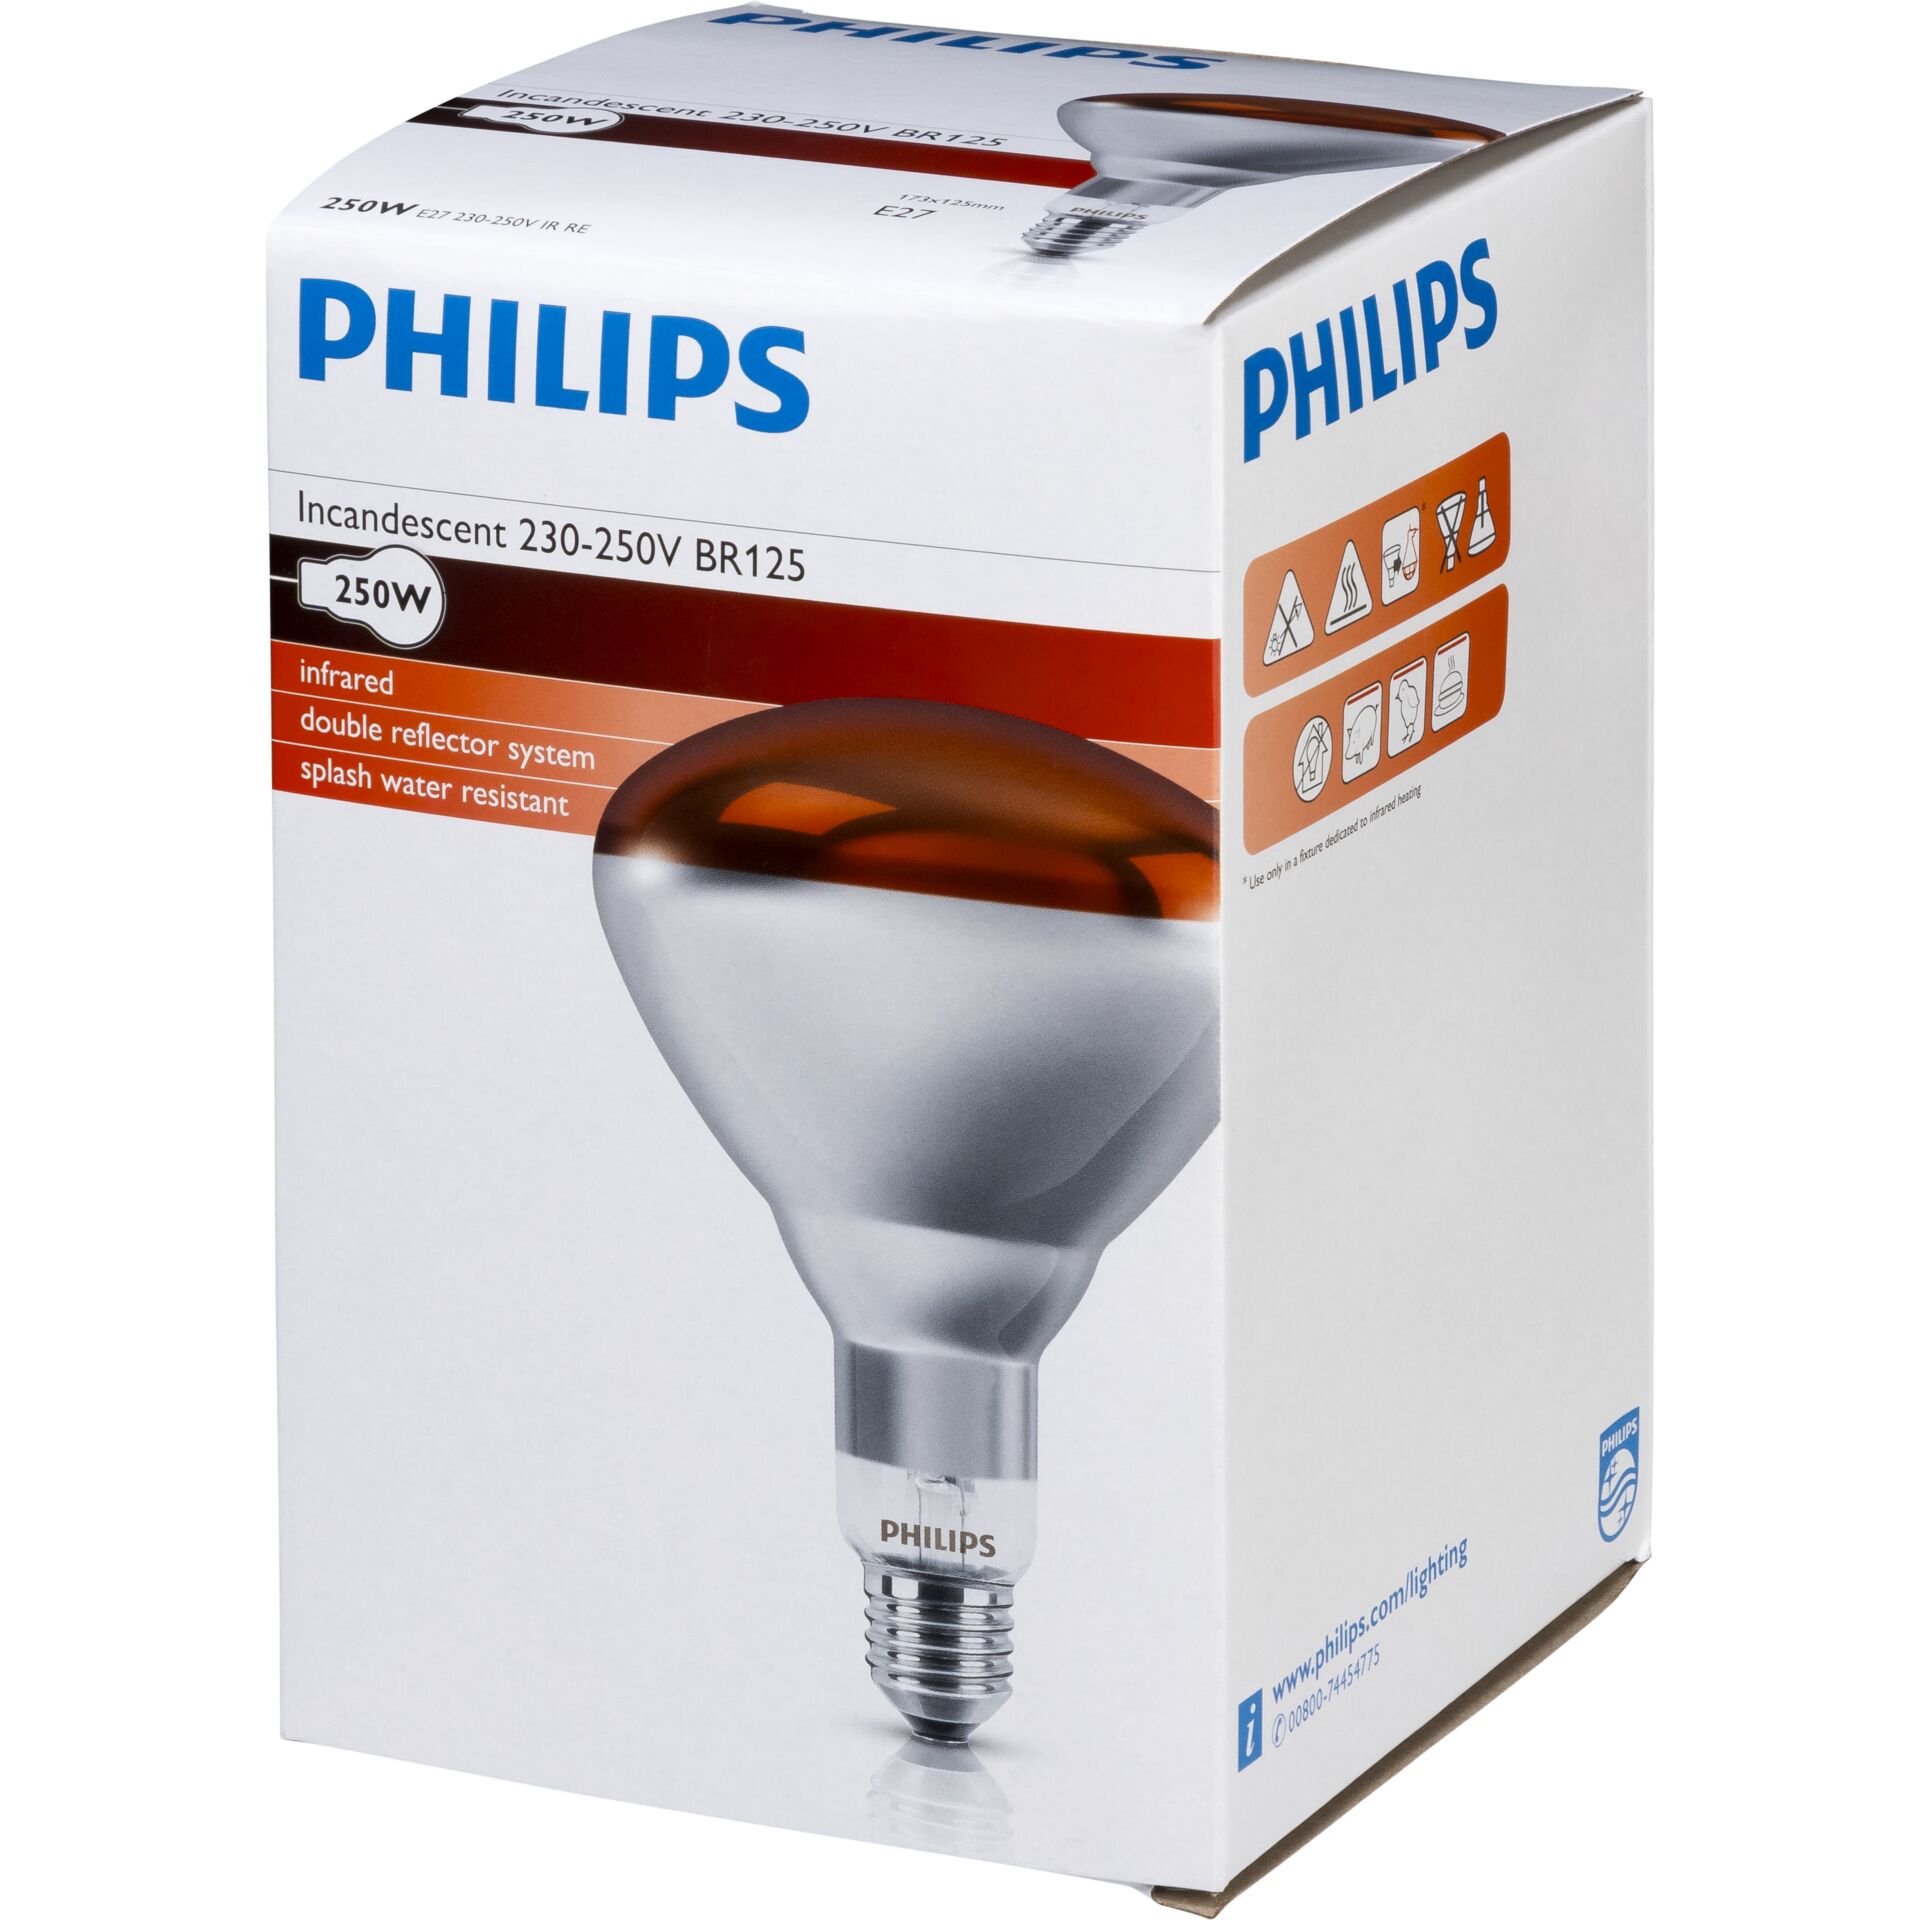 Philips lampada infrar. BR125 IR 250W E27 230-250V rosso